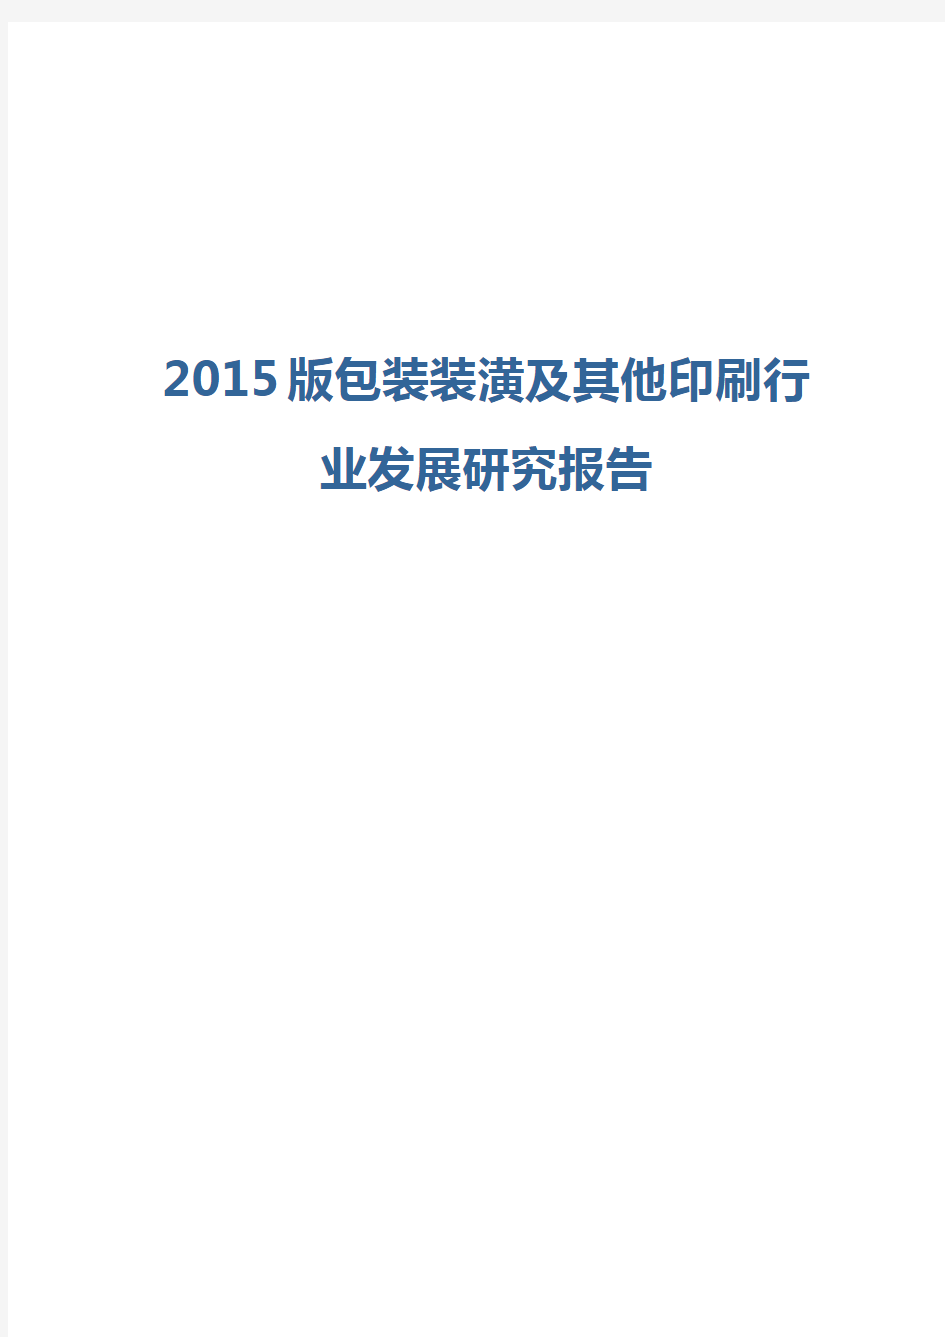 2015版包装装潢及其他印刷行业发展研究报告